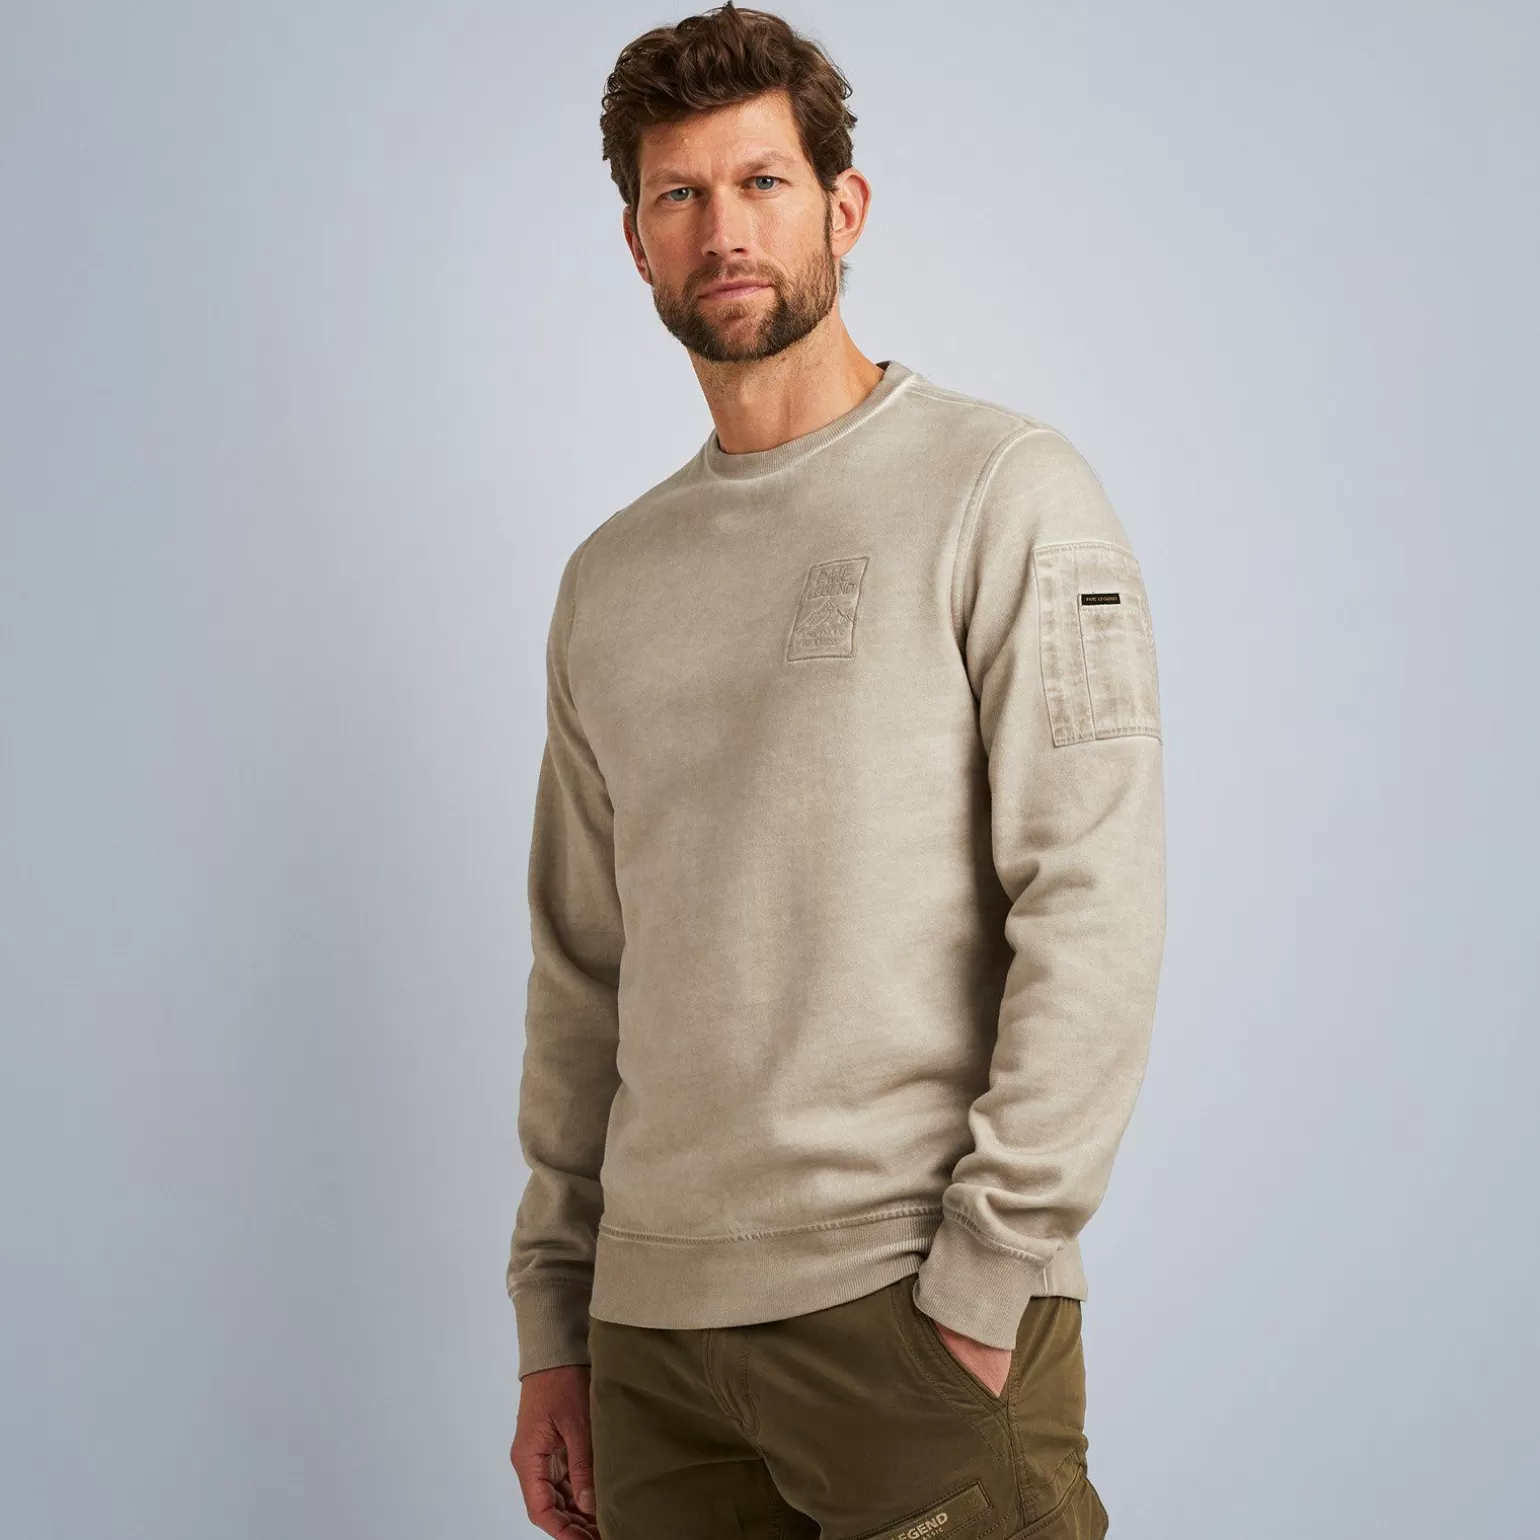 Tops*PME Legend Tops Sweatshirt With Flight Pocket